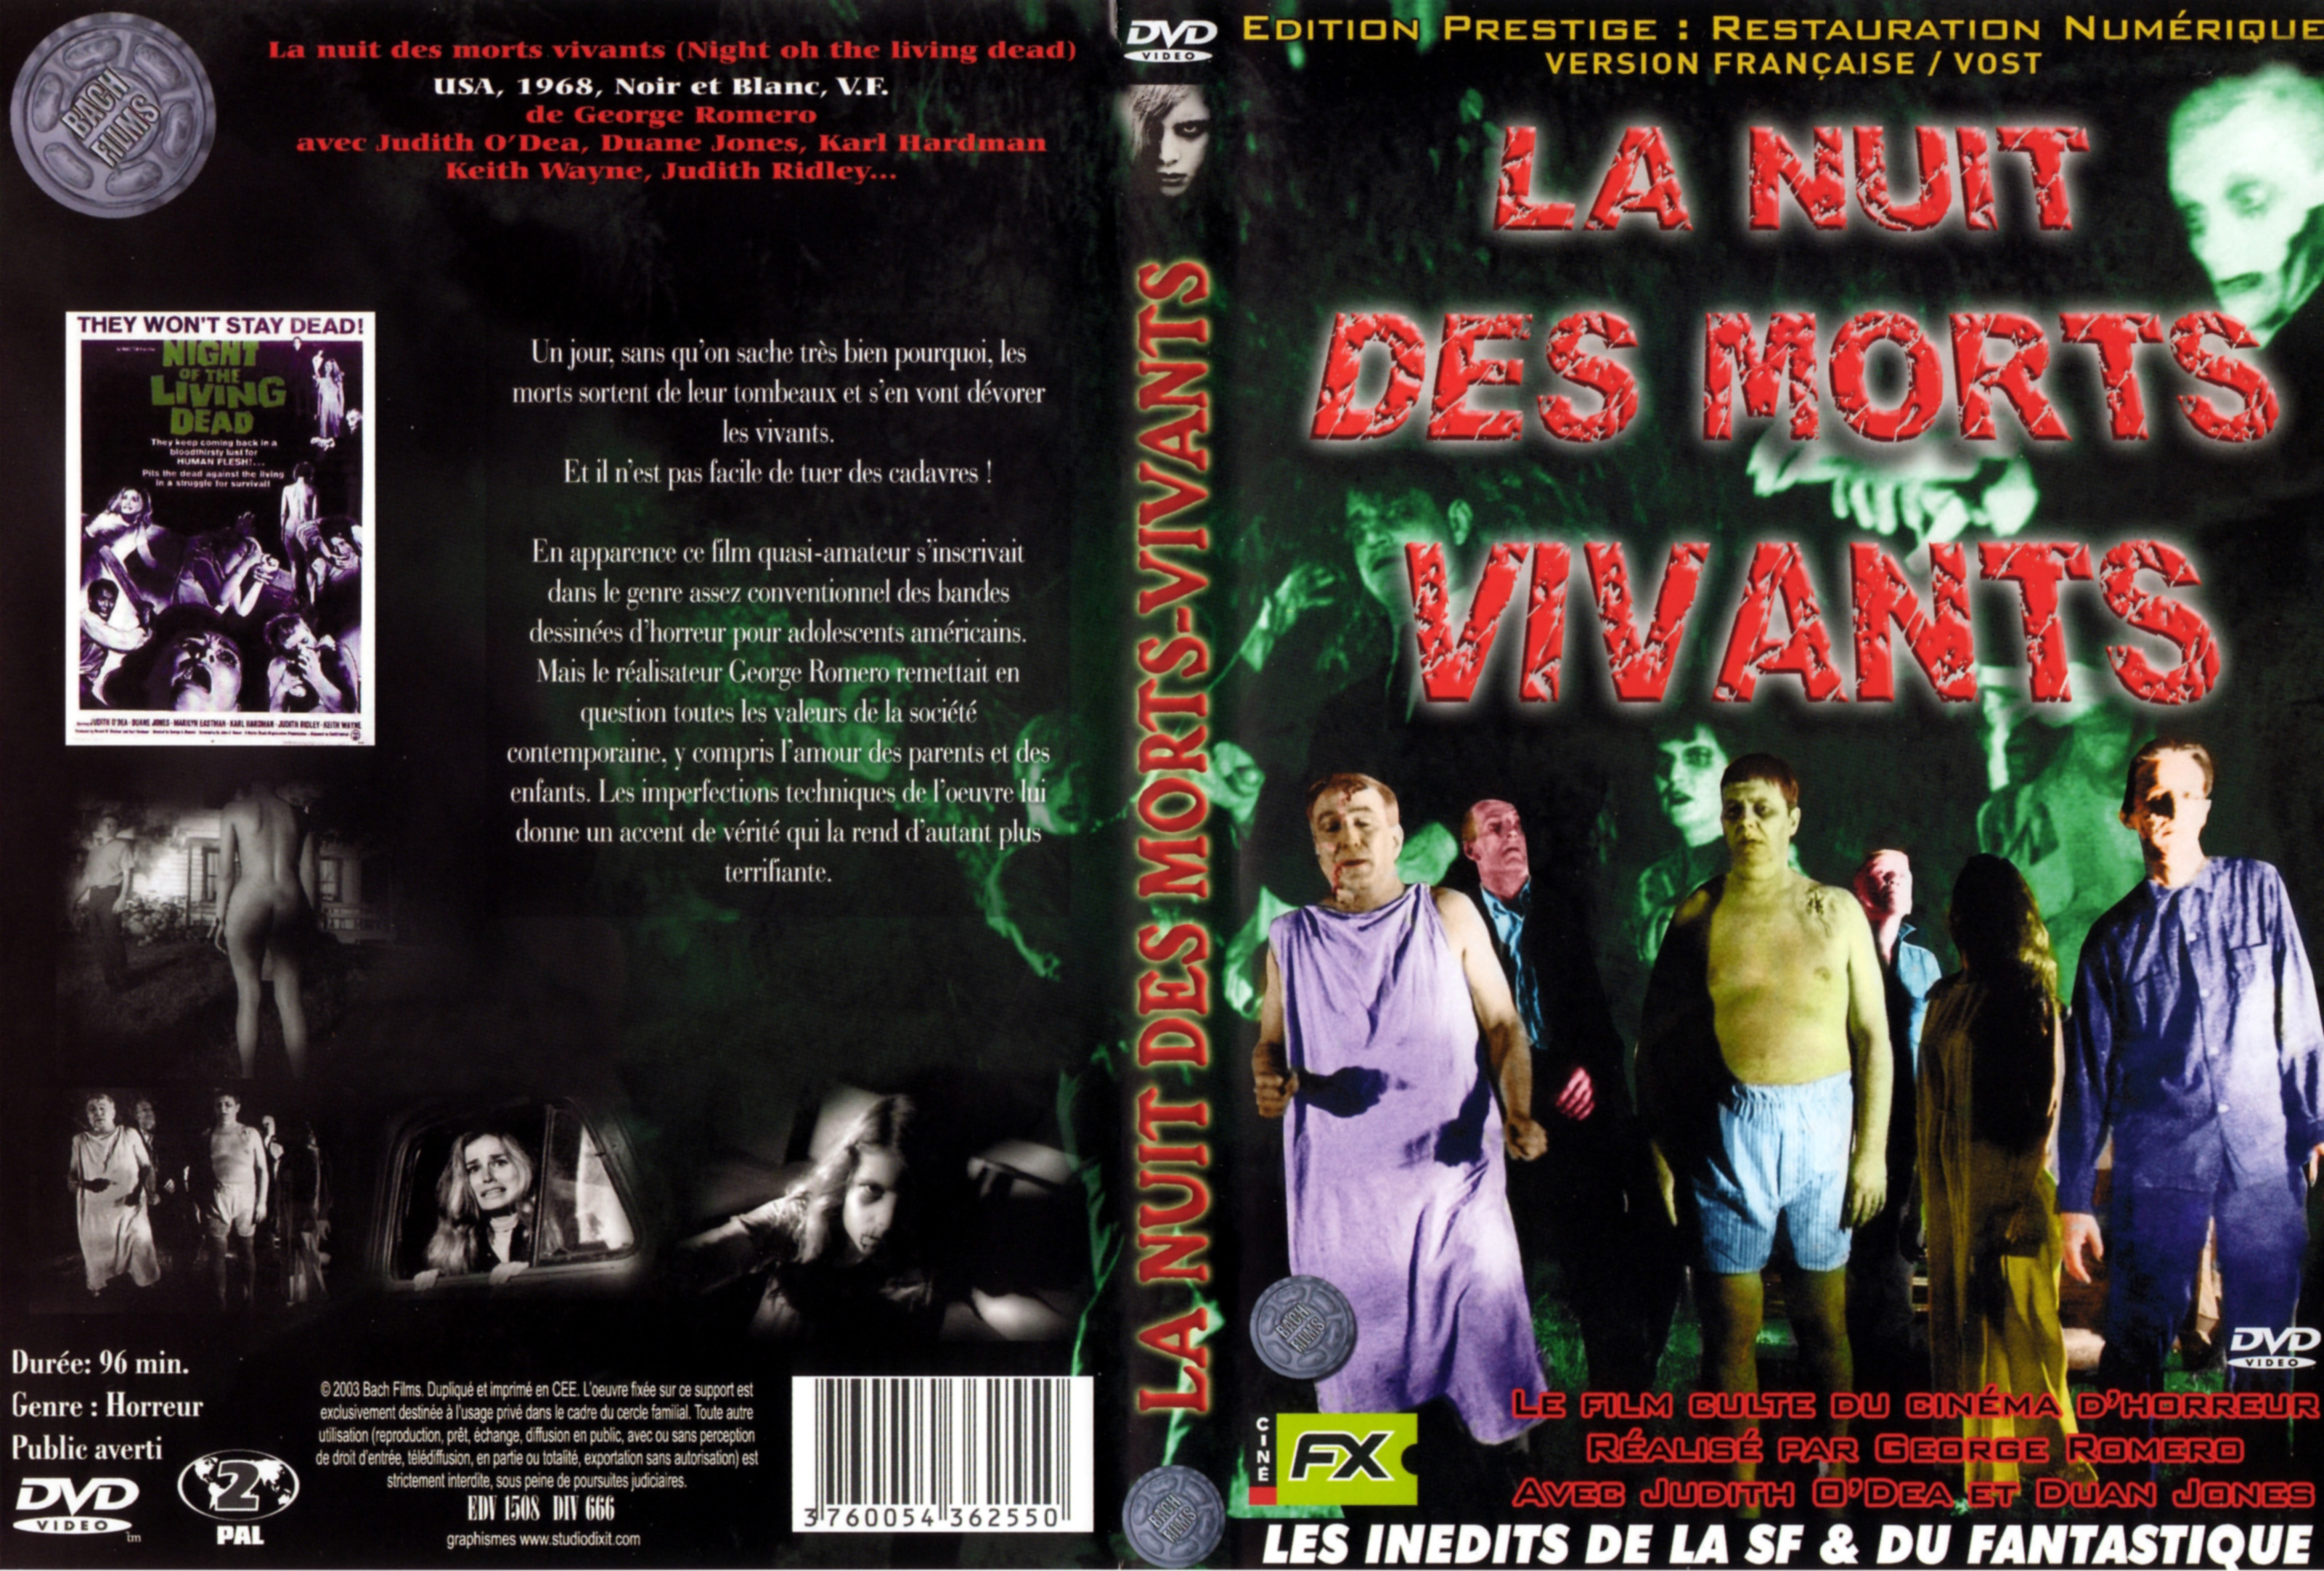 Jaquette DVD La nuit des morts vivants v2